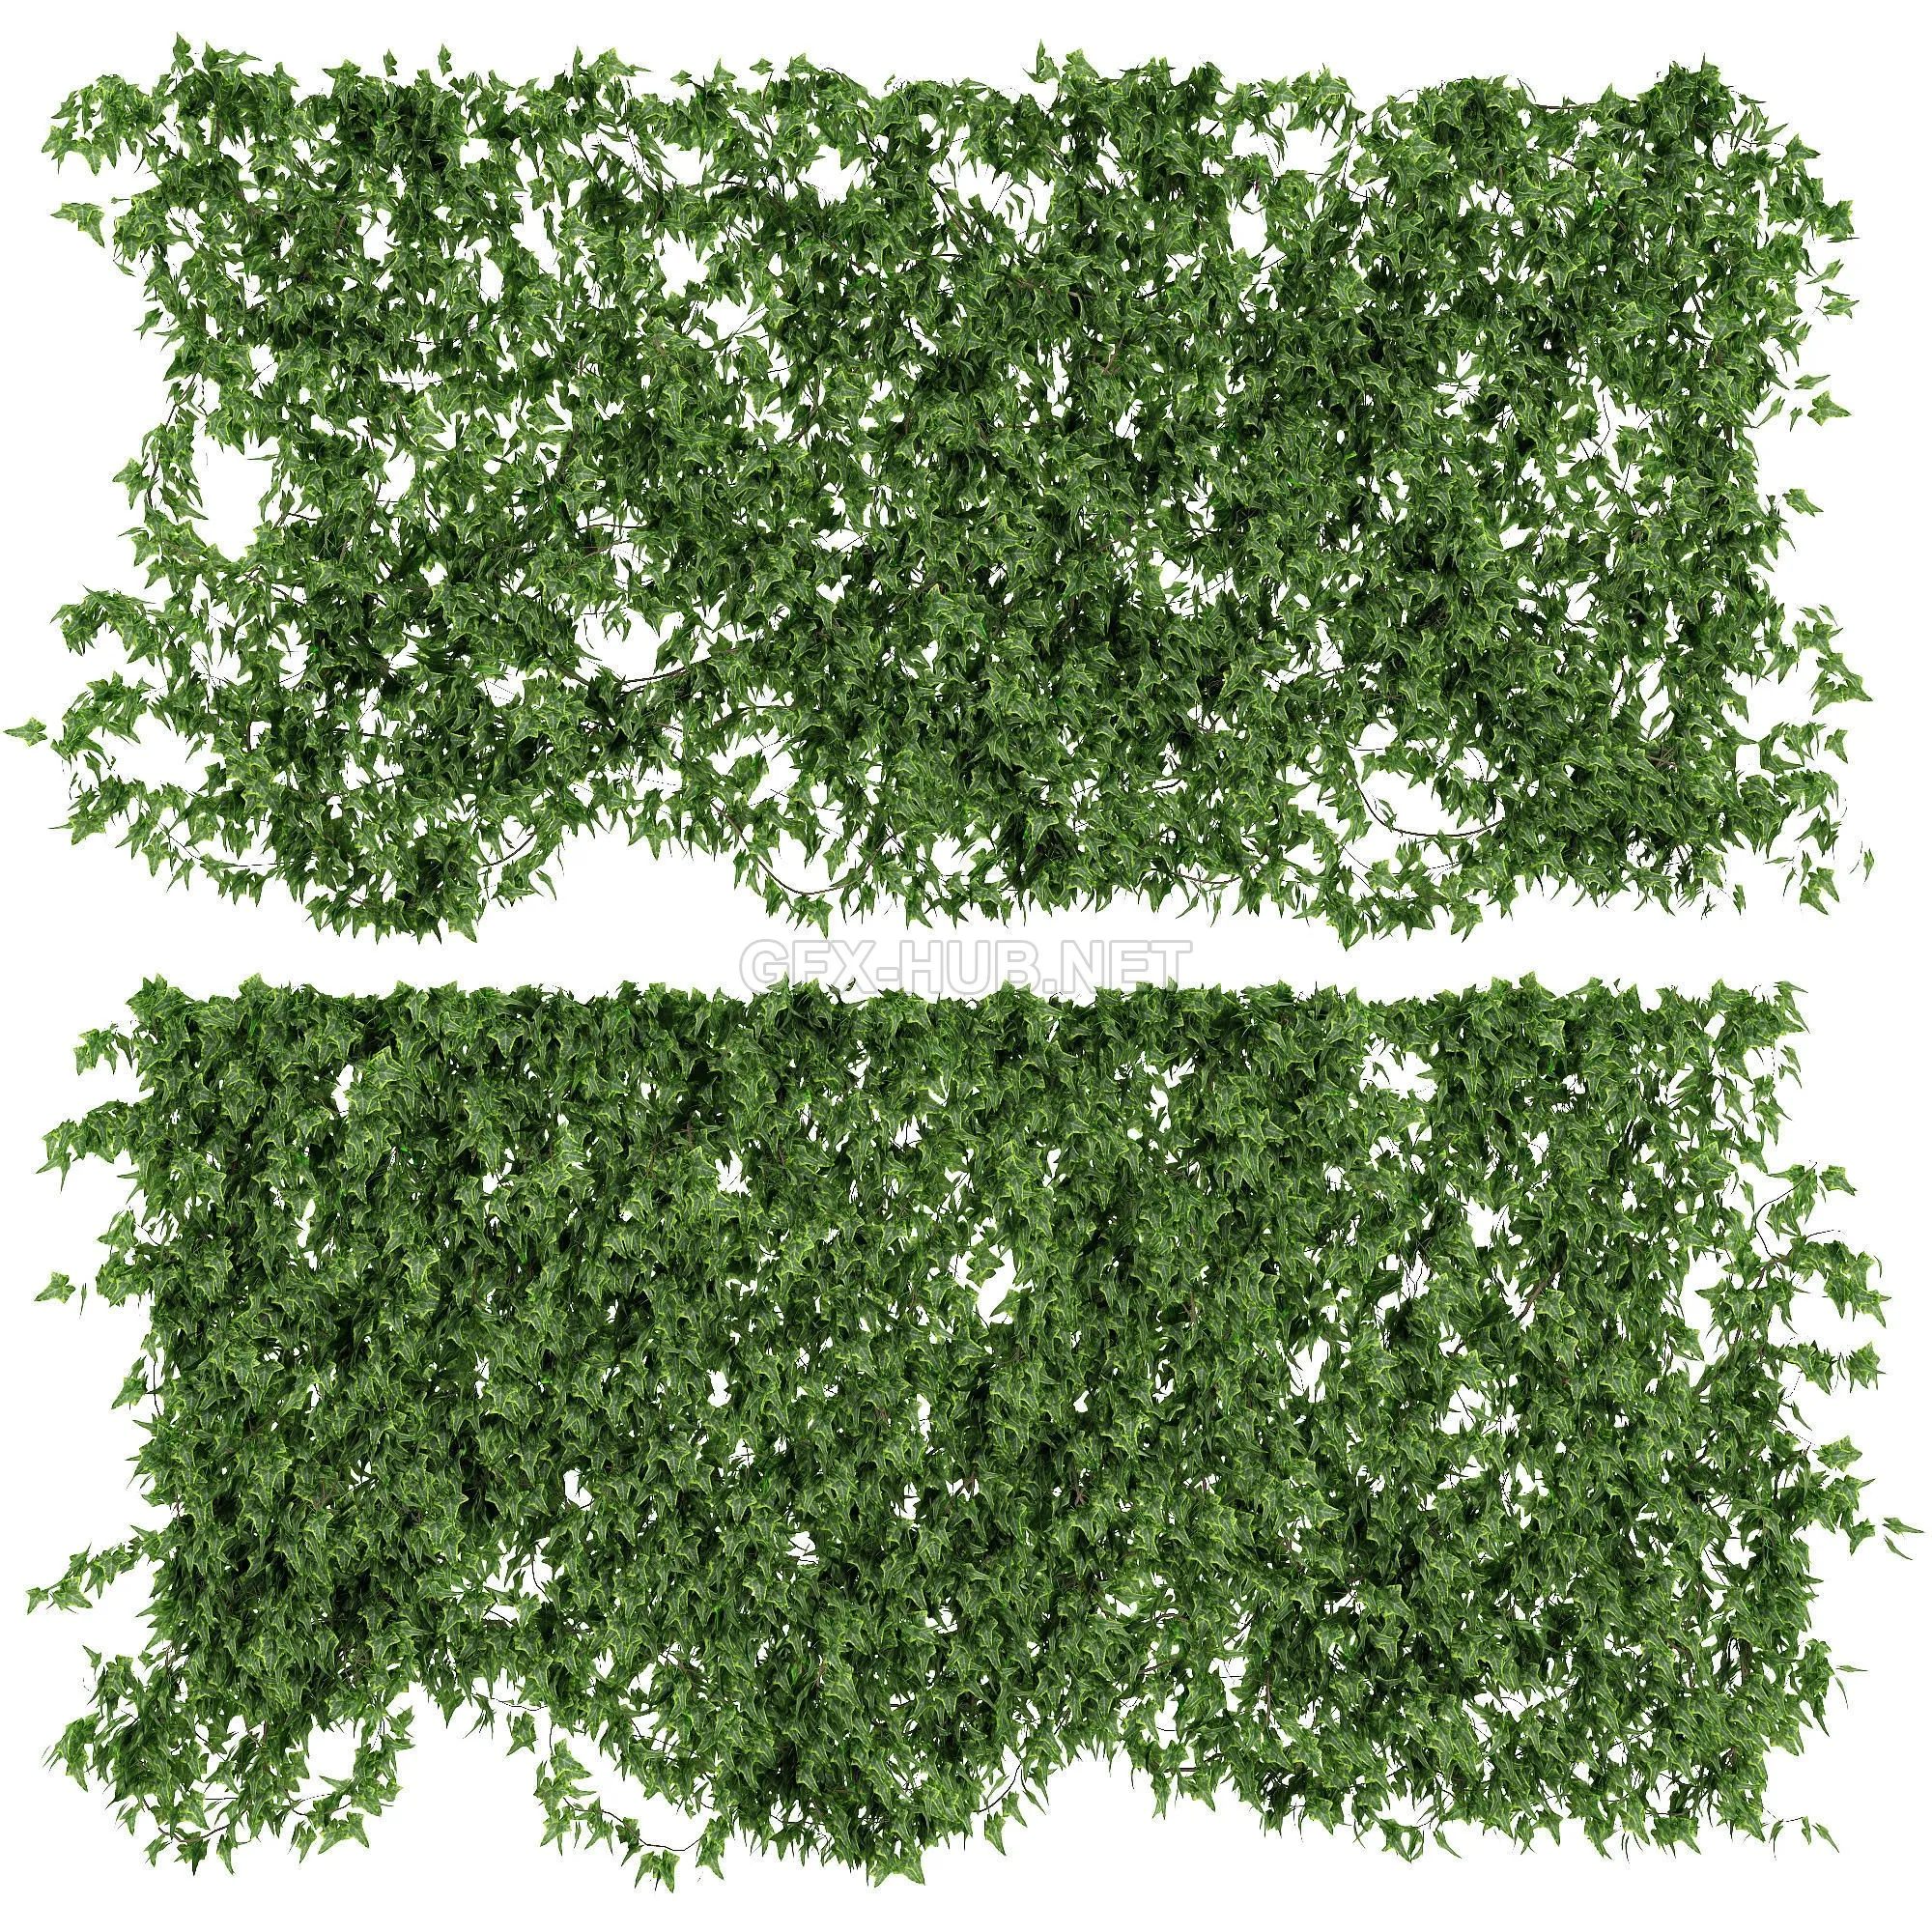 FURNITURE 3D MODELS – Ivy walls 2